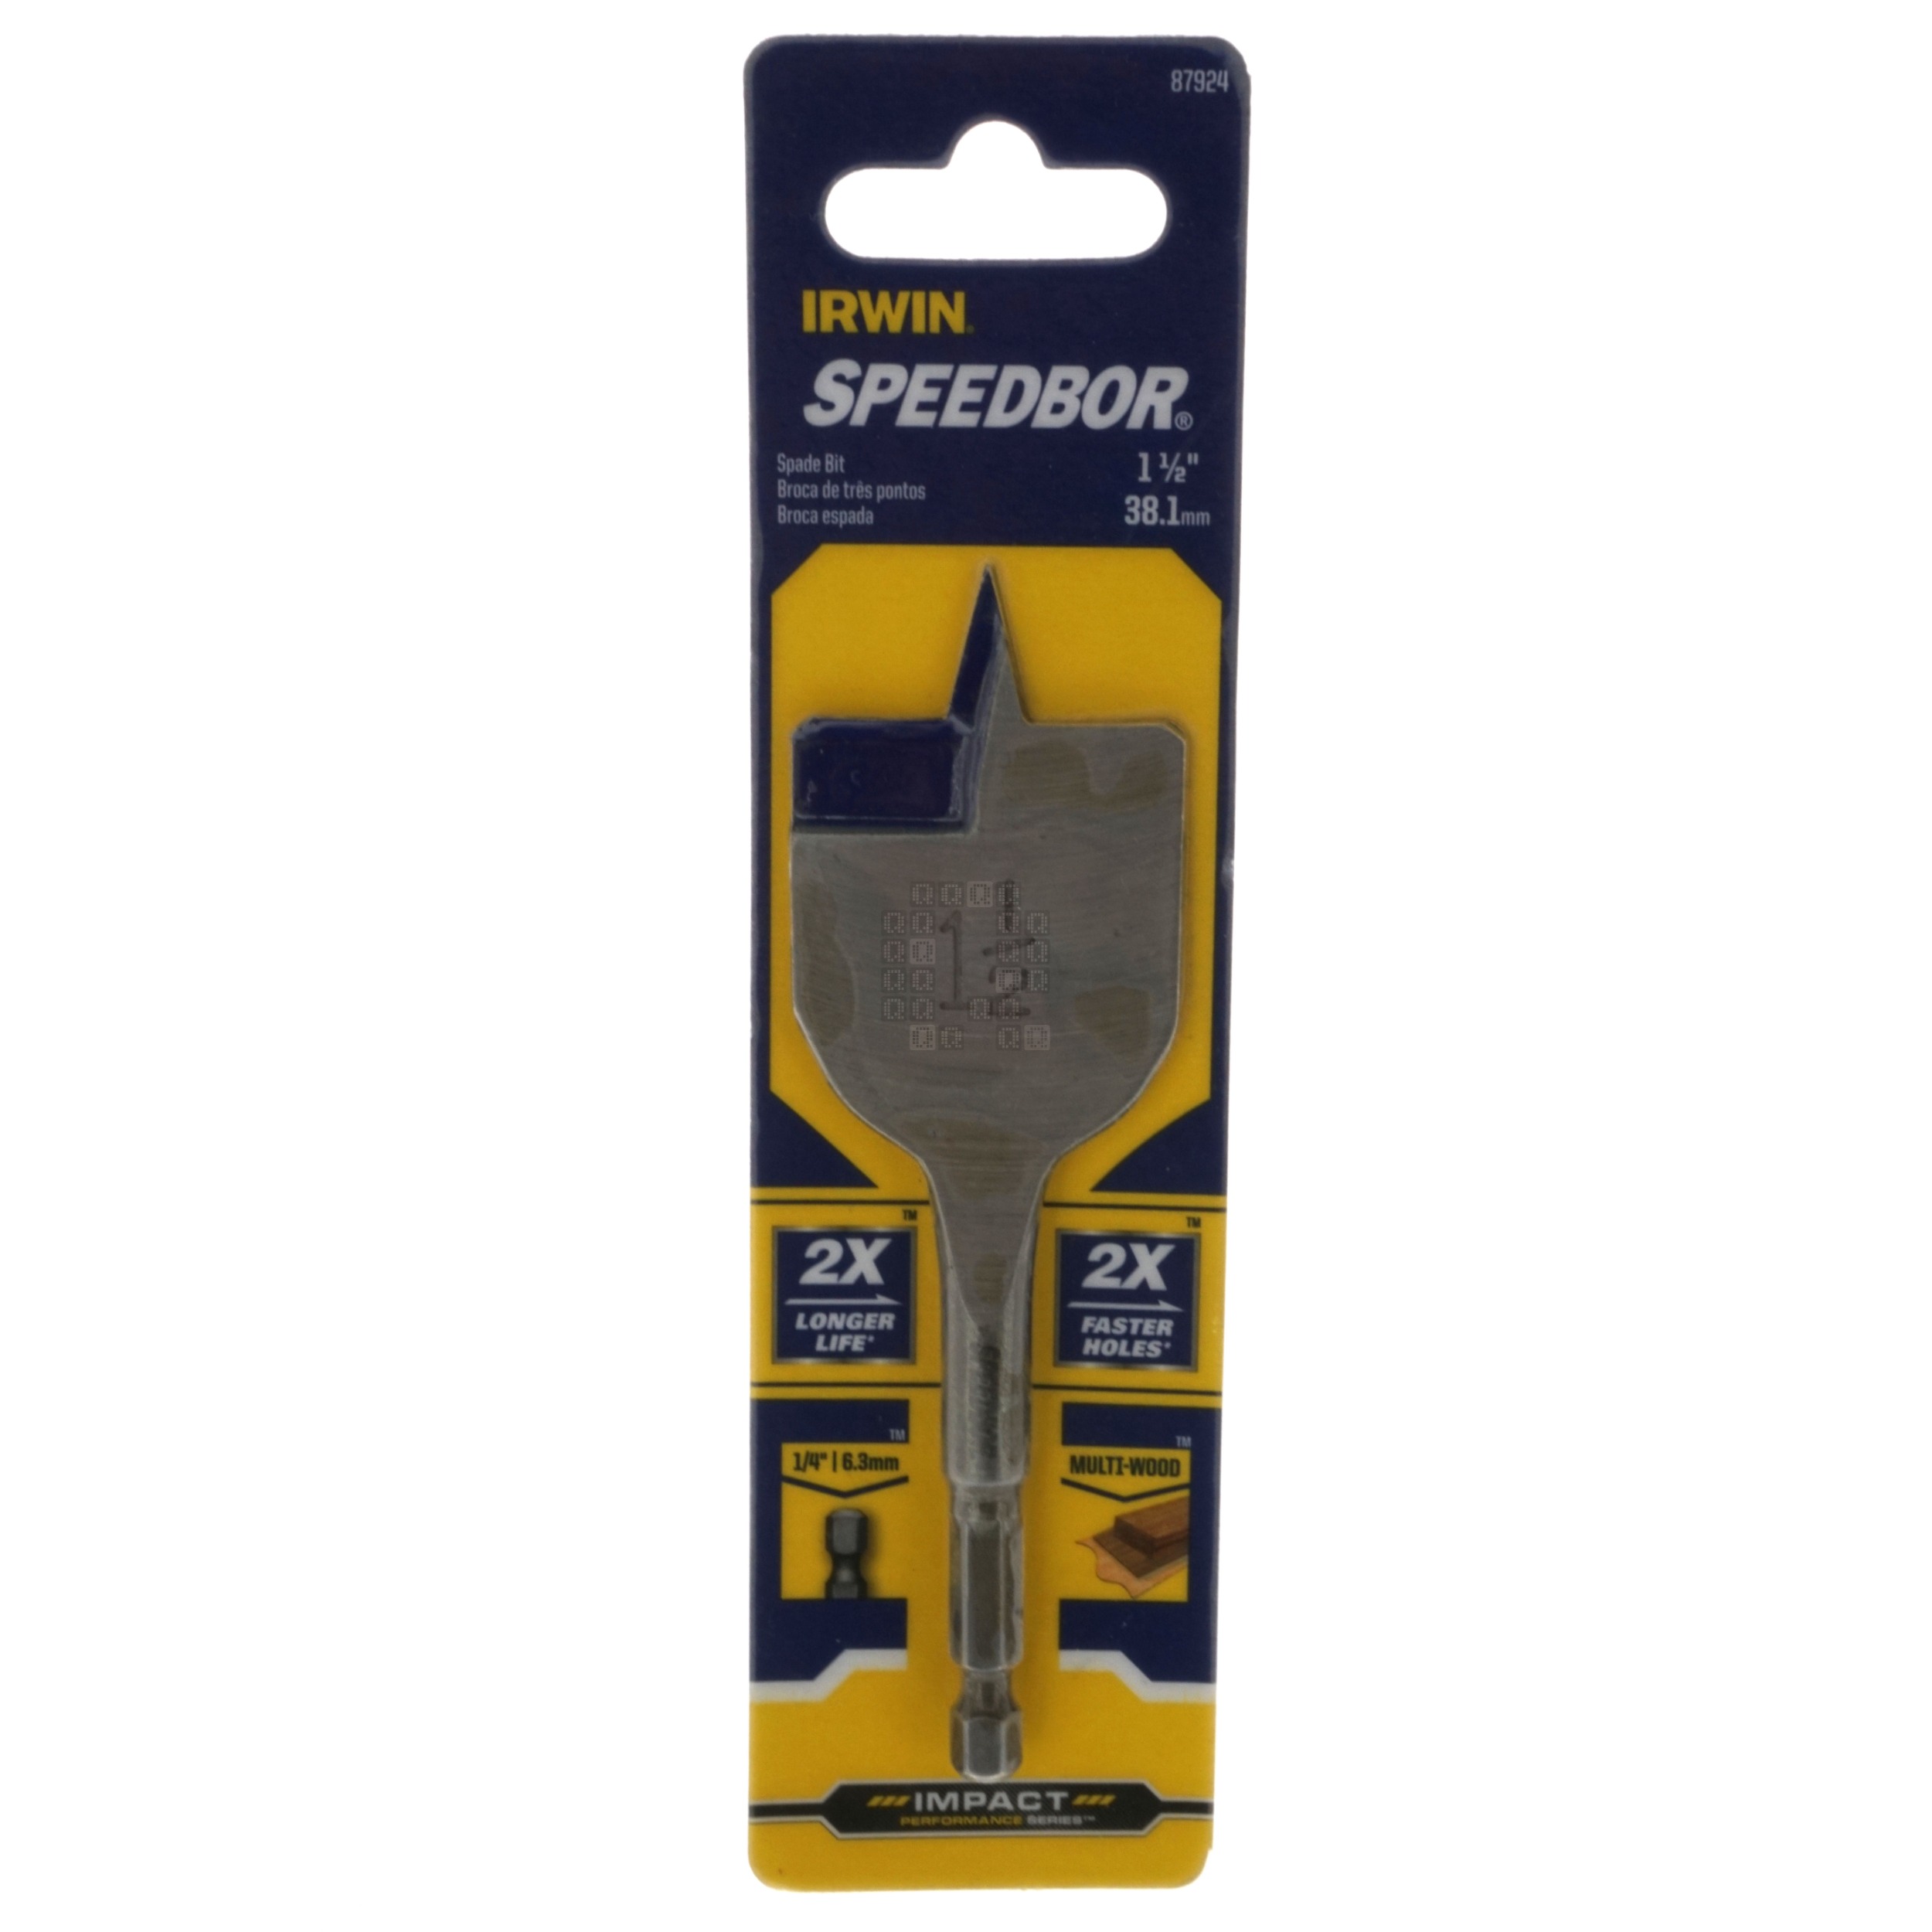 Irwin Industrial Tools 87924 SPEEDBOR 1-1/2" x 4" Standard Length Spade Bit, 1/4" Hex Drive